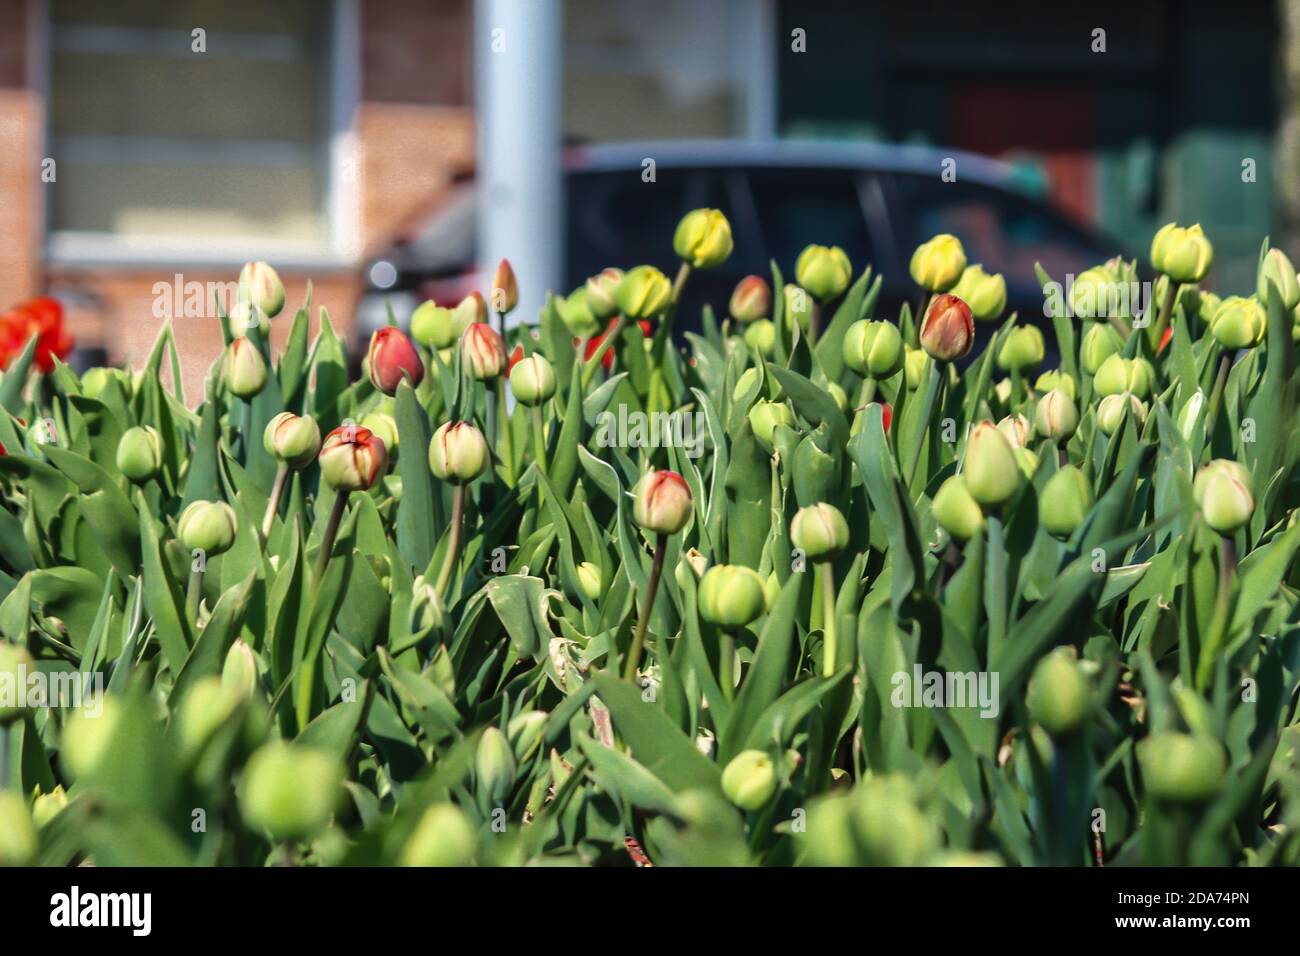 Bourgeons et tiges de tulipes sur fond de mur de briques et de voiture. Un bon fond pour un site sur les fleurs, la floriculture, l'art Banque D'Images